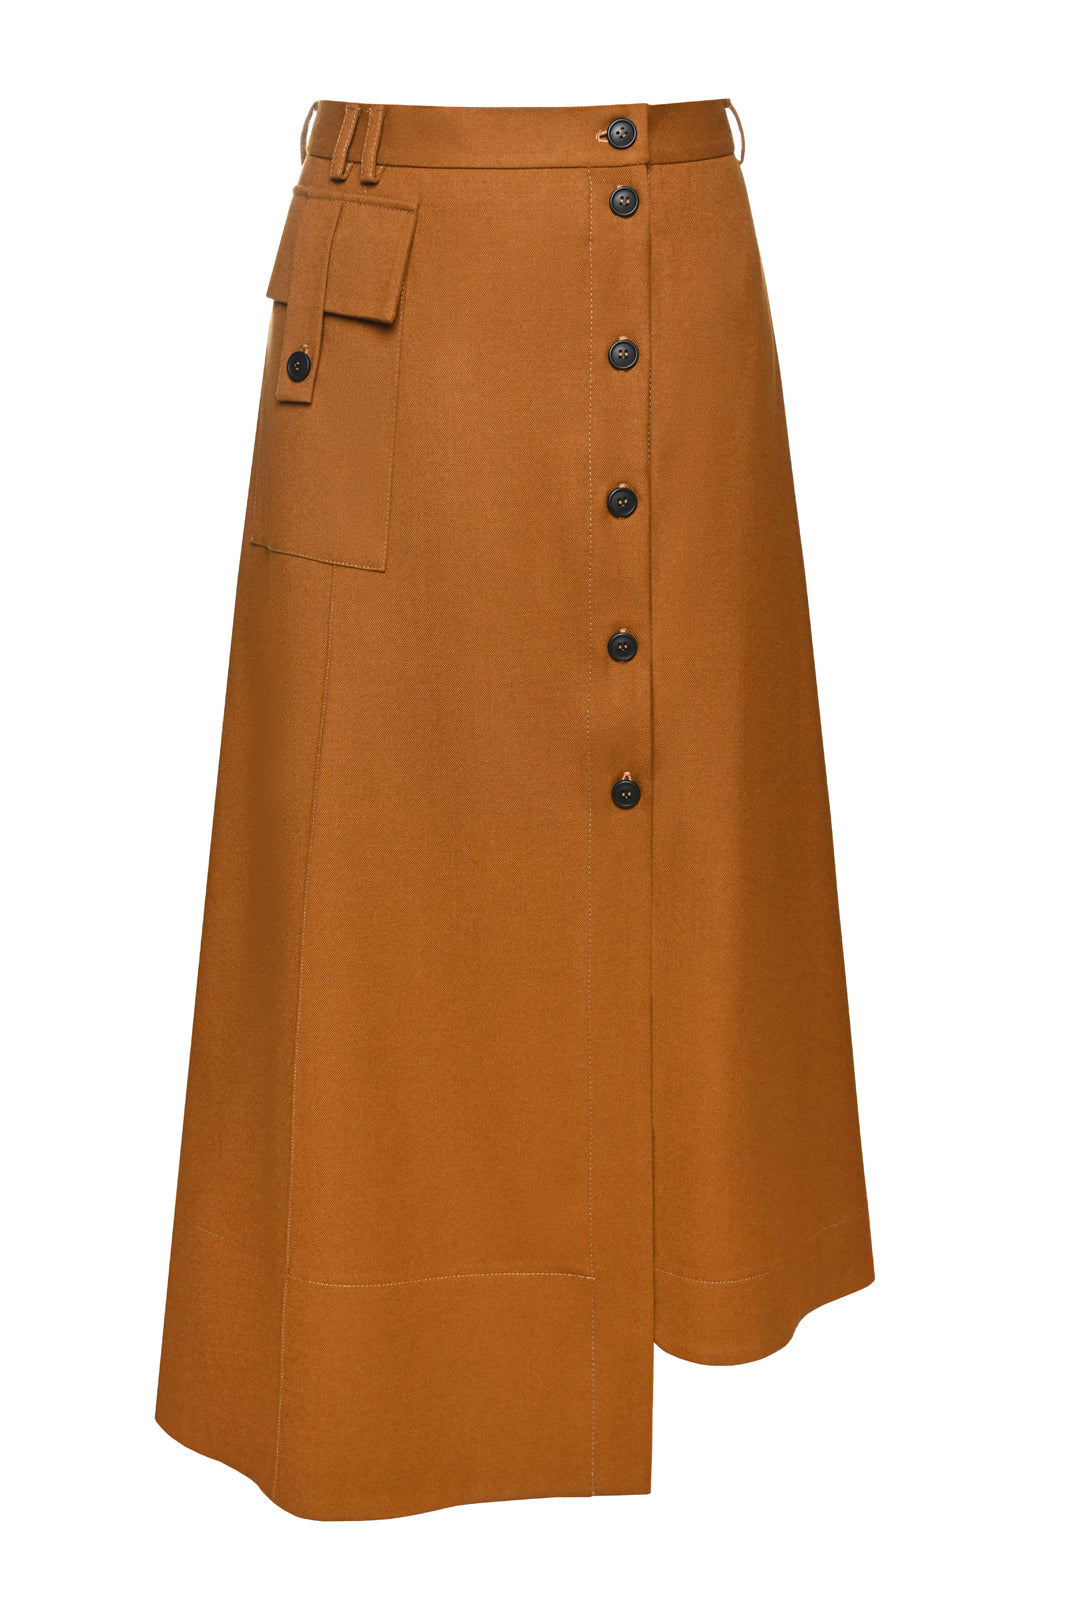 Wool Buttoned Skirt